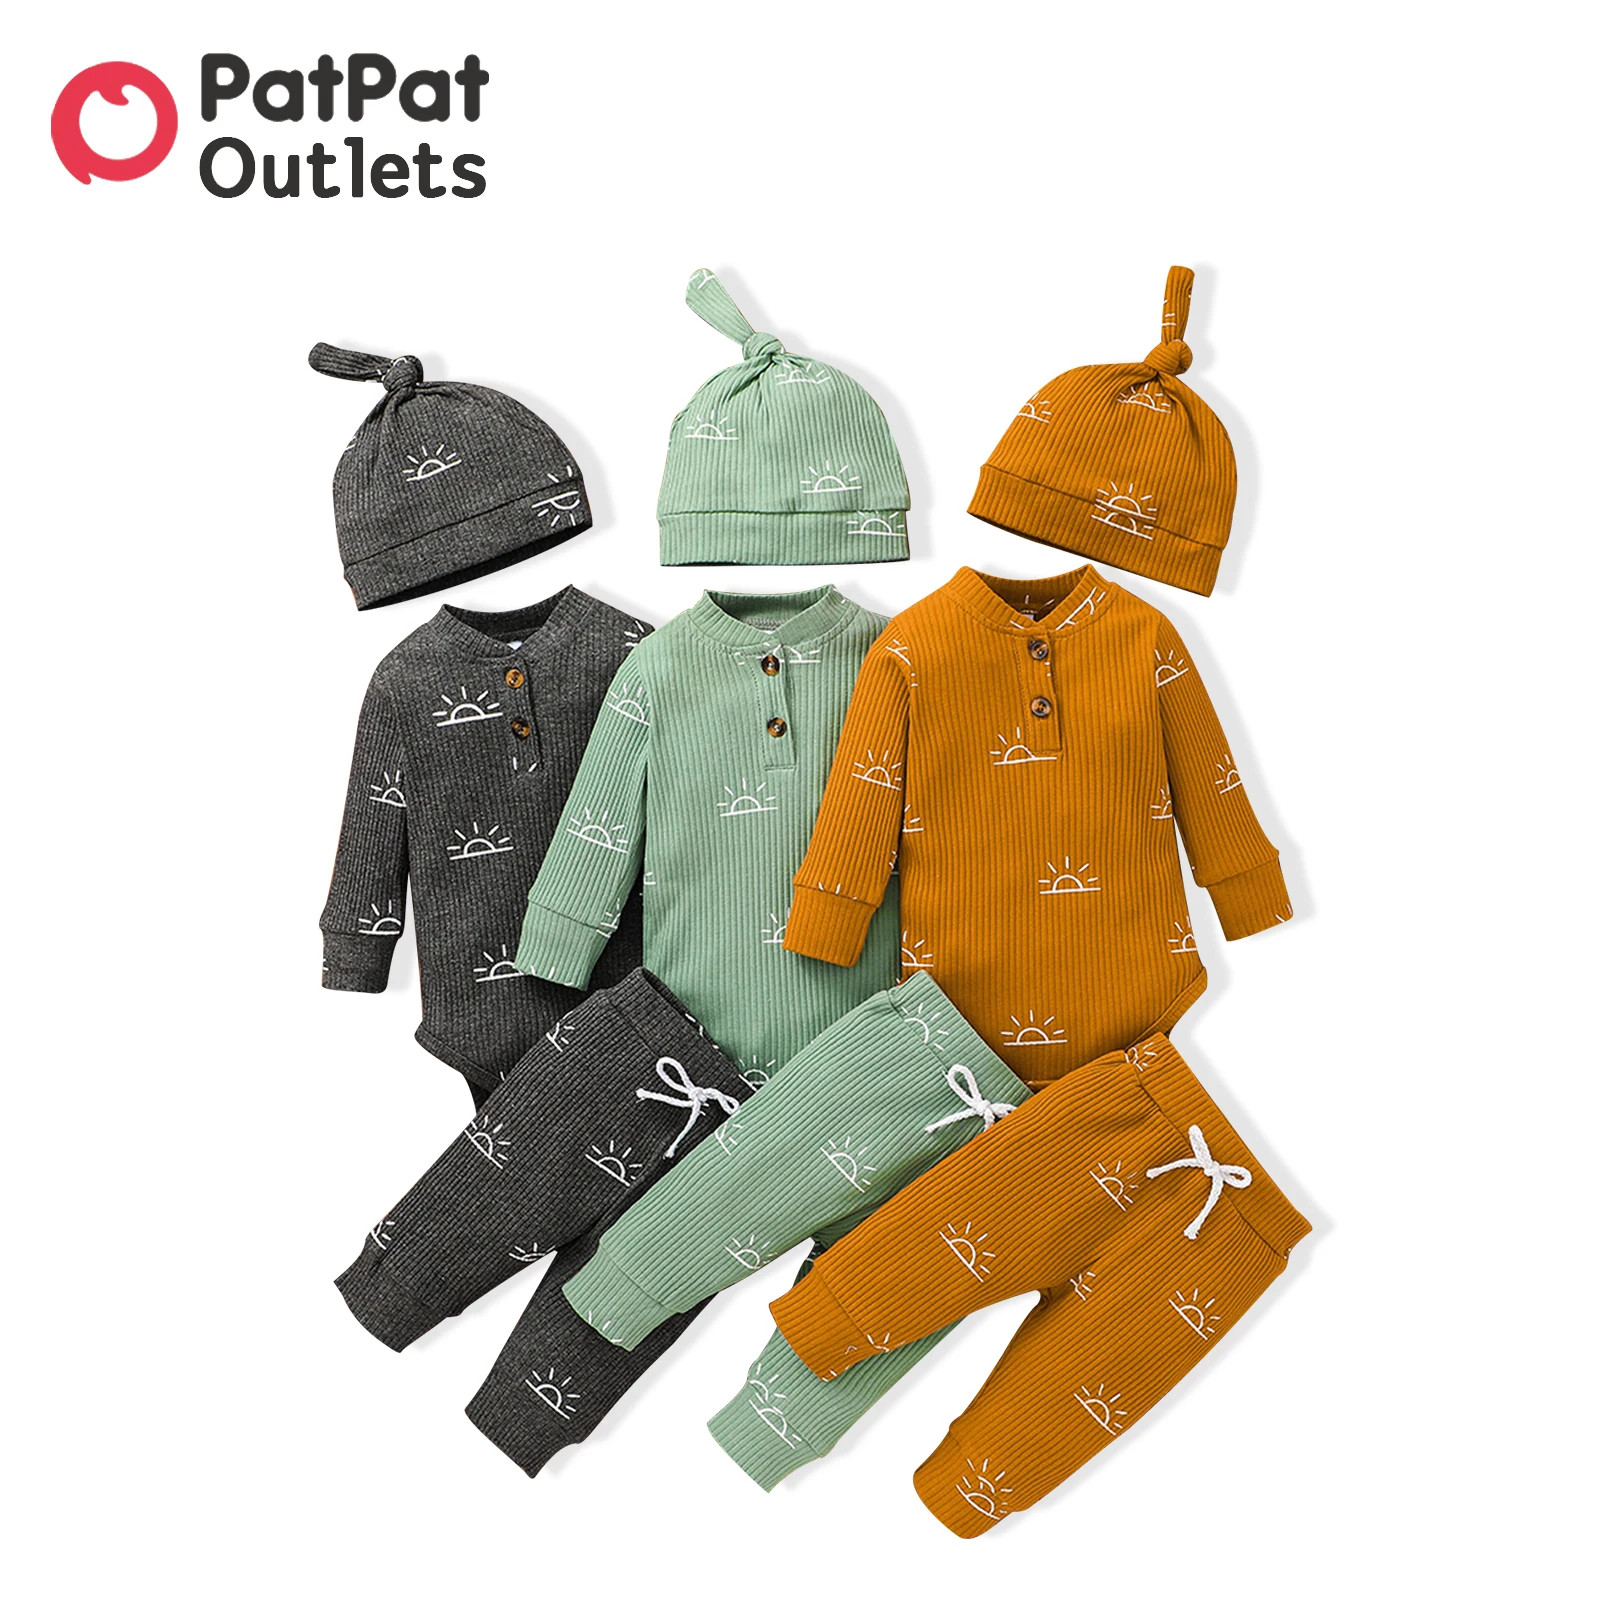 PatPat-Conjunto de ropa de otoño para recién nacido, pelele 95% algodón de manga larga con diseño de botones, pantalones elásticos, gorro, 3 piezas